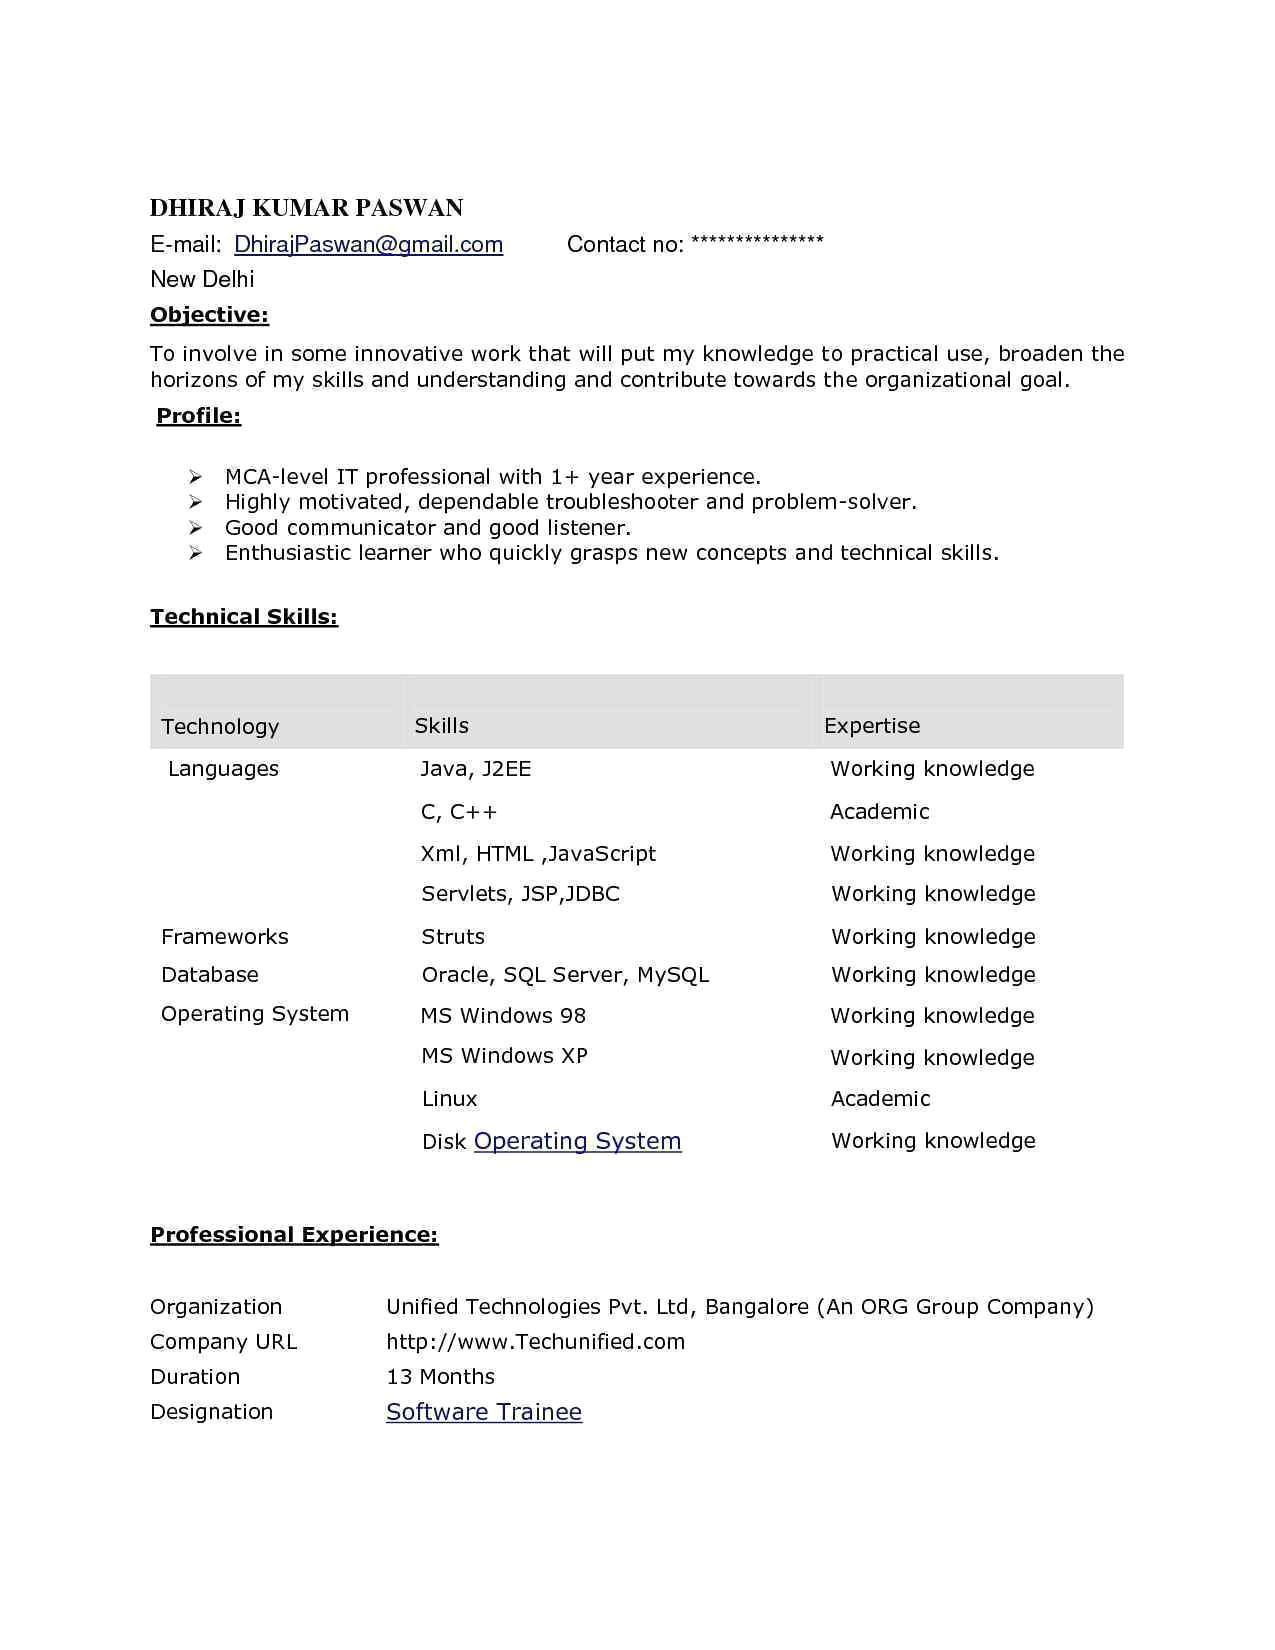 sample resume for web designer fresher